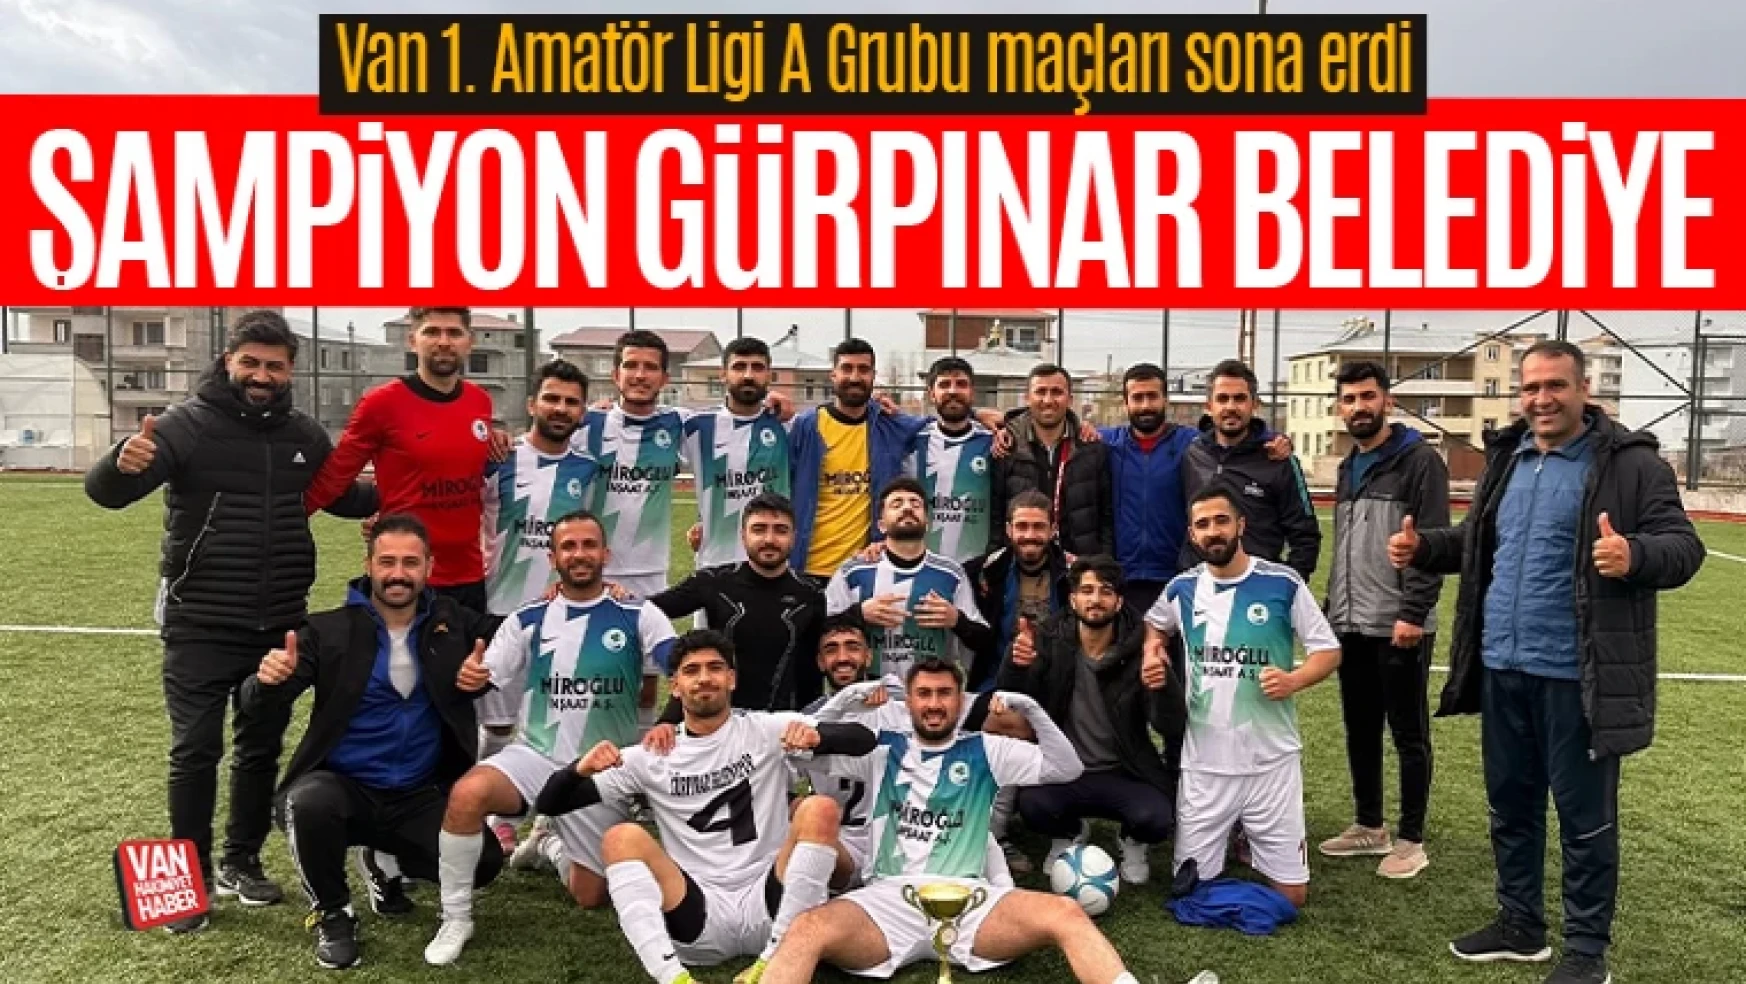 Van 1. Amatör Ligi A Grubu Şampiyonu Gürpınar Belediyespor